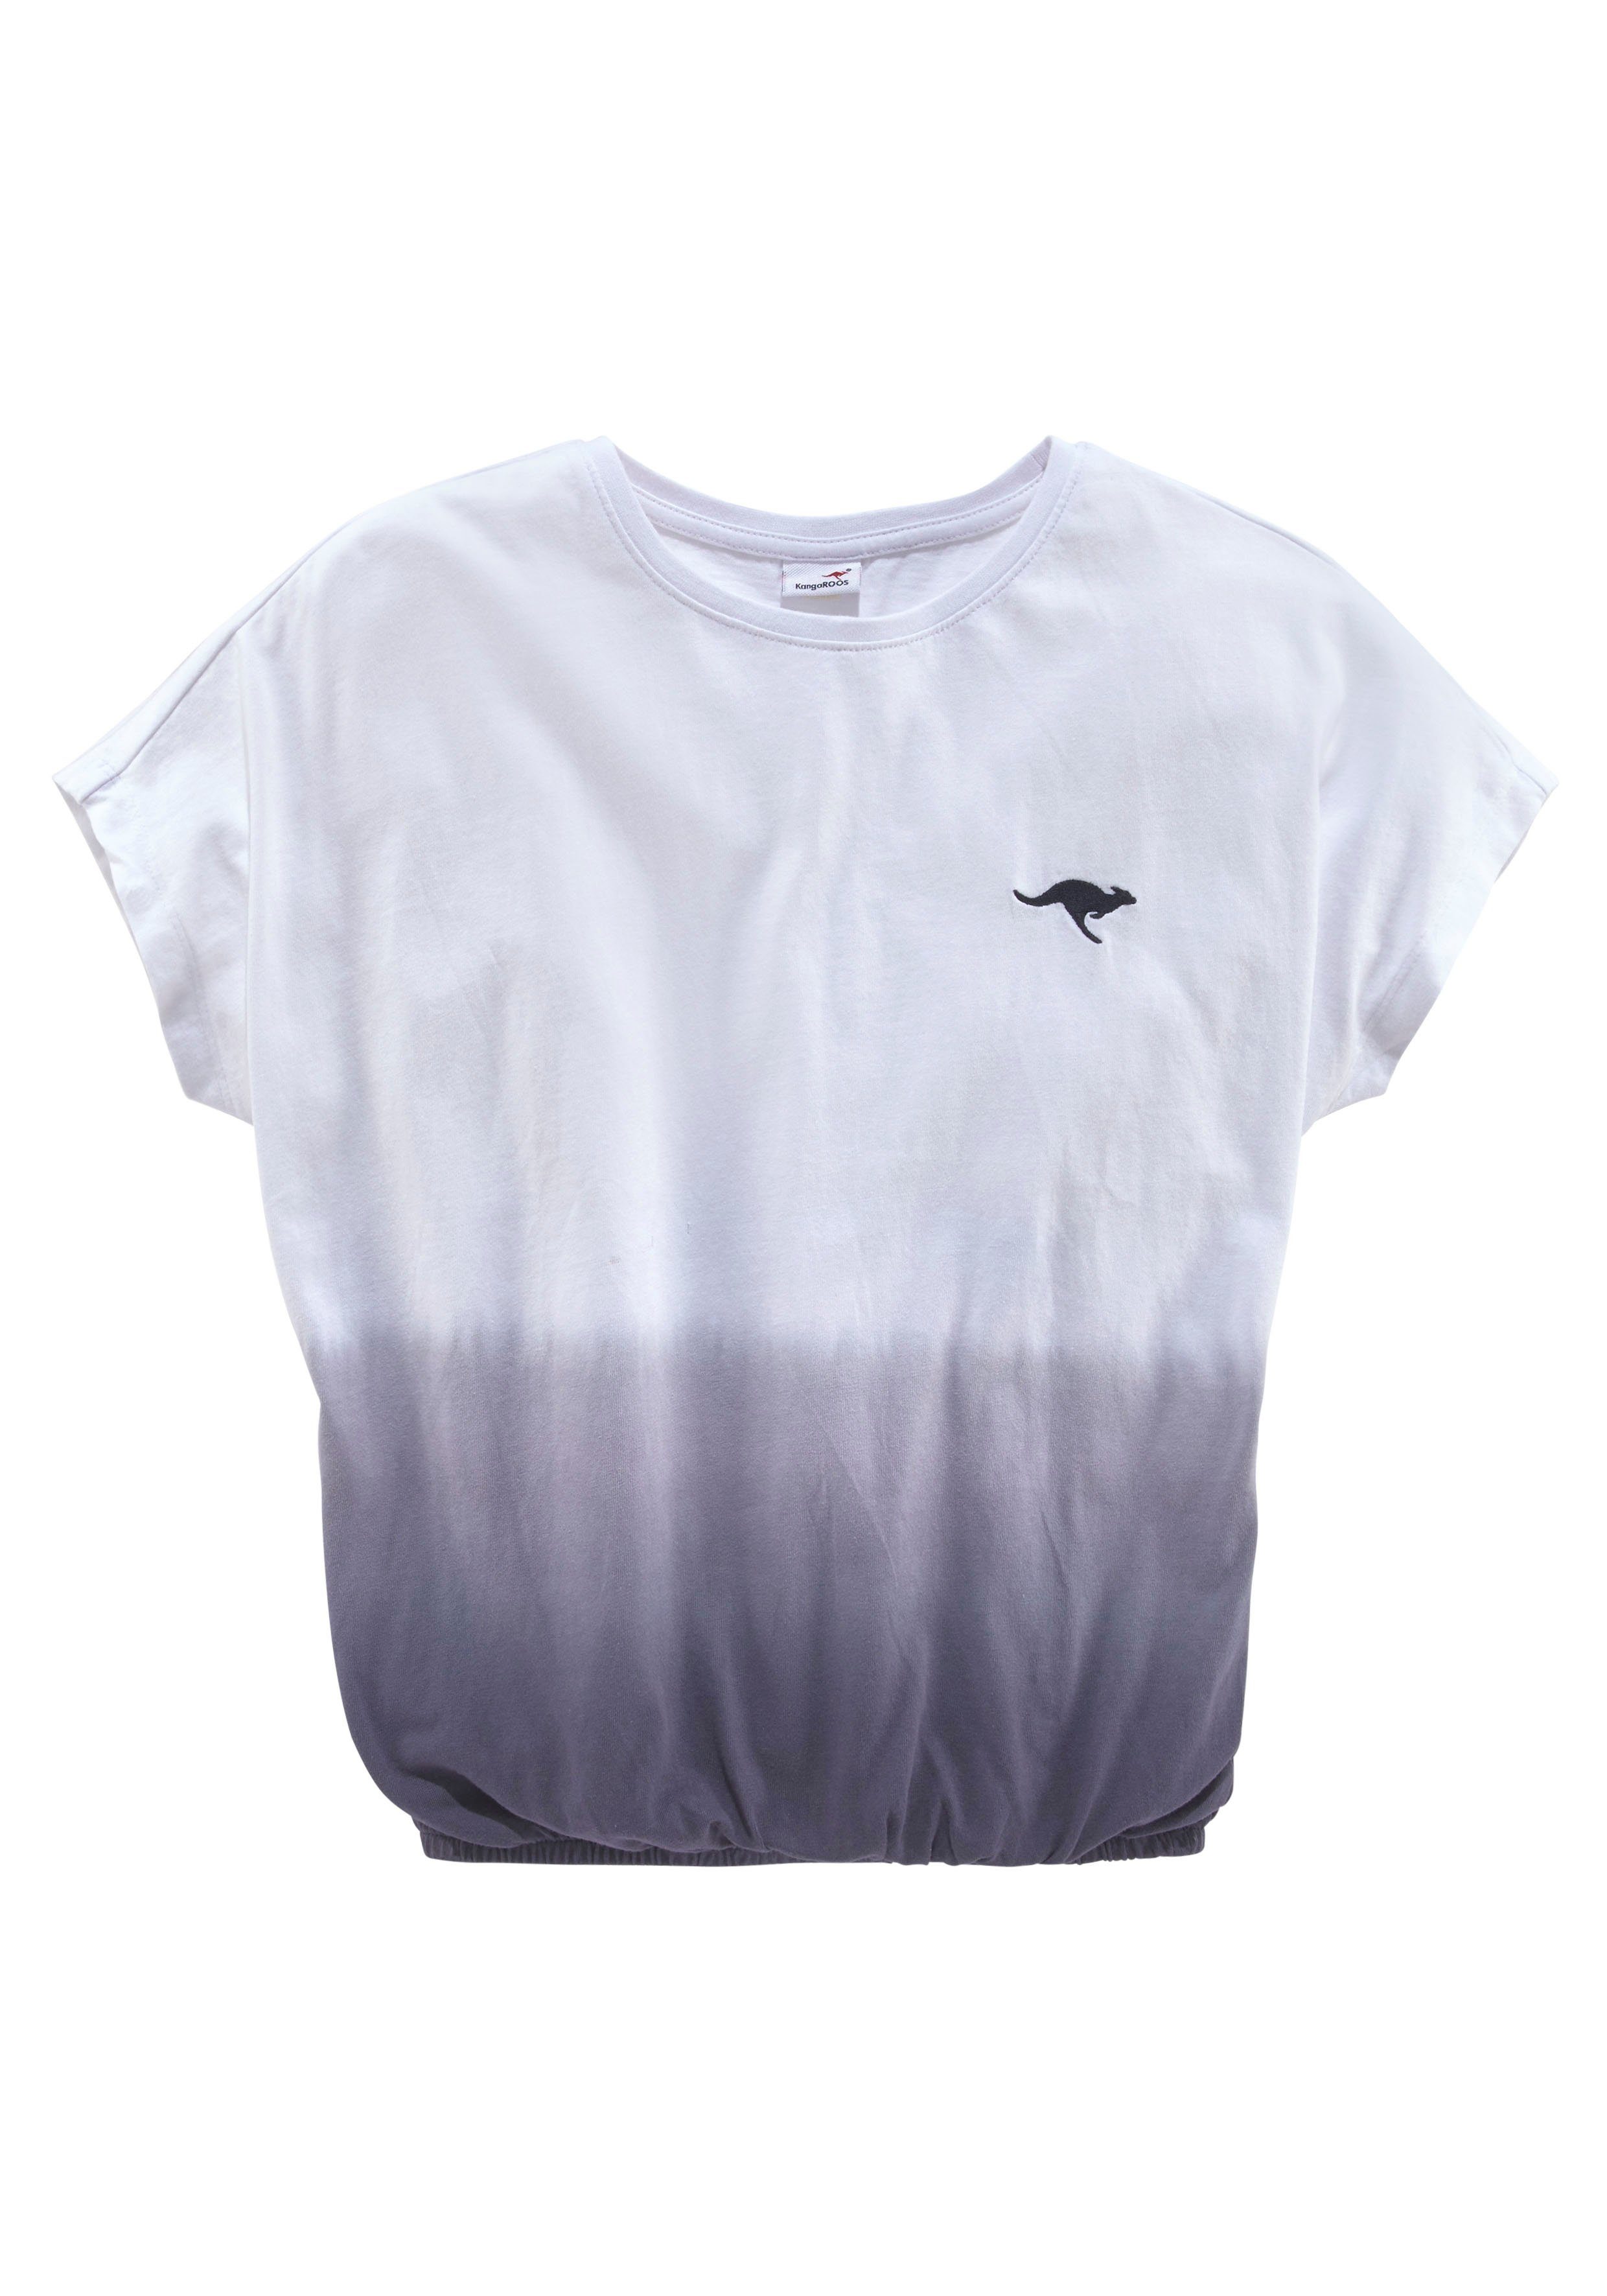 KangaROOS T-Shirt im Farbverlauf, Fledermausärmel und modischem Farbverlaufe